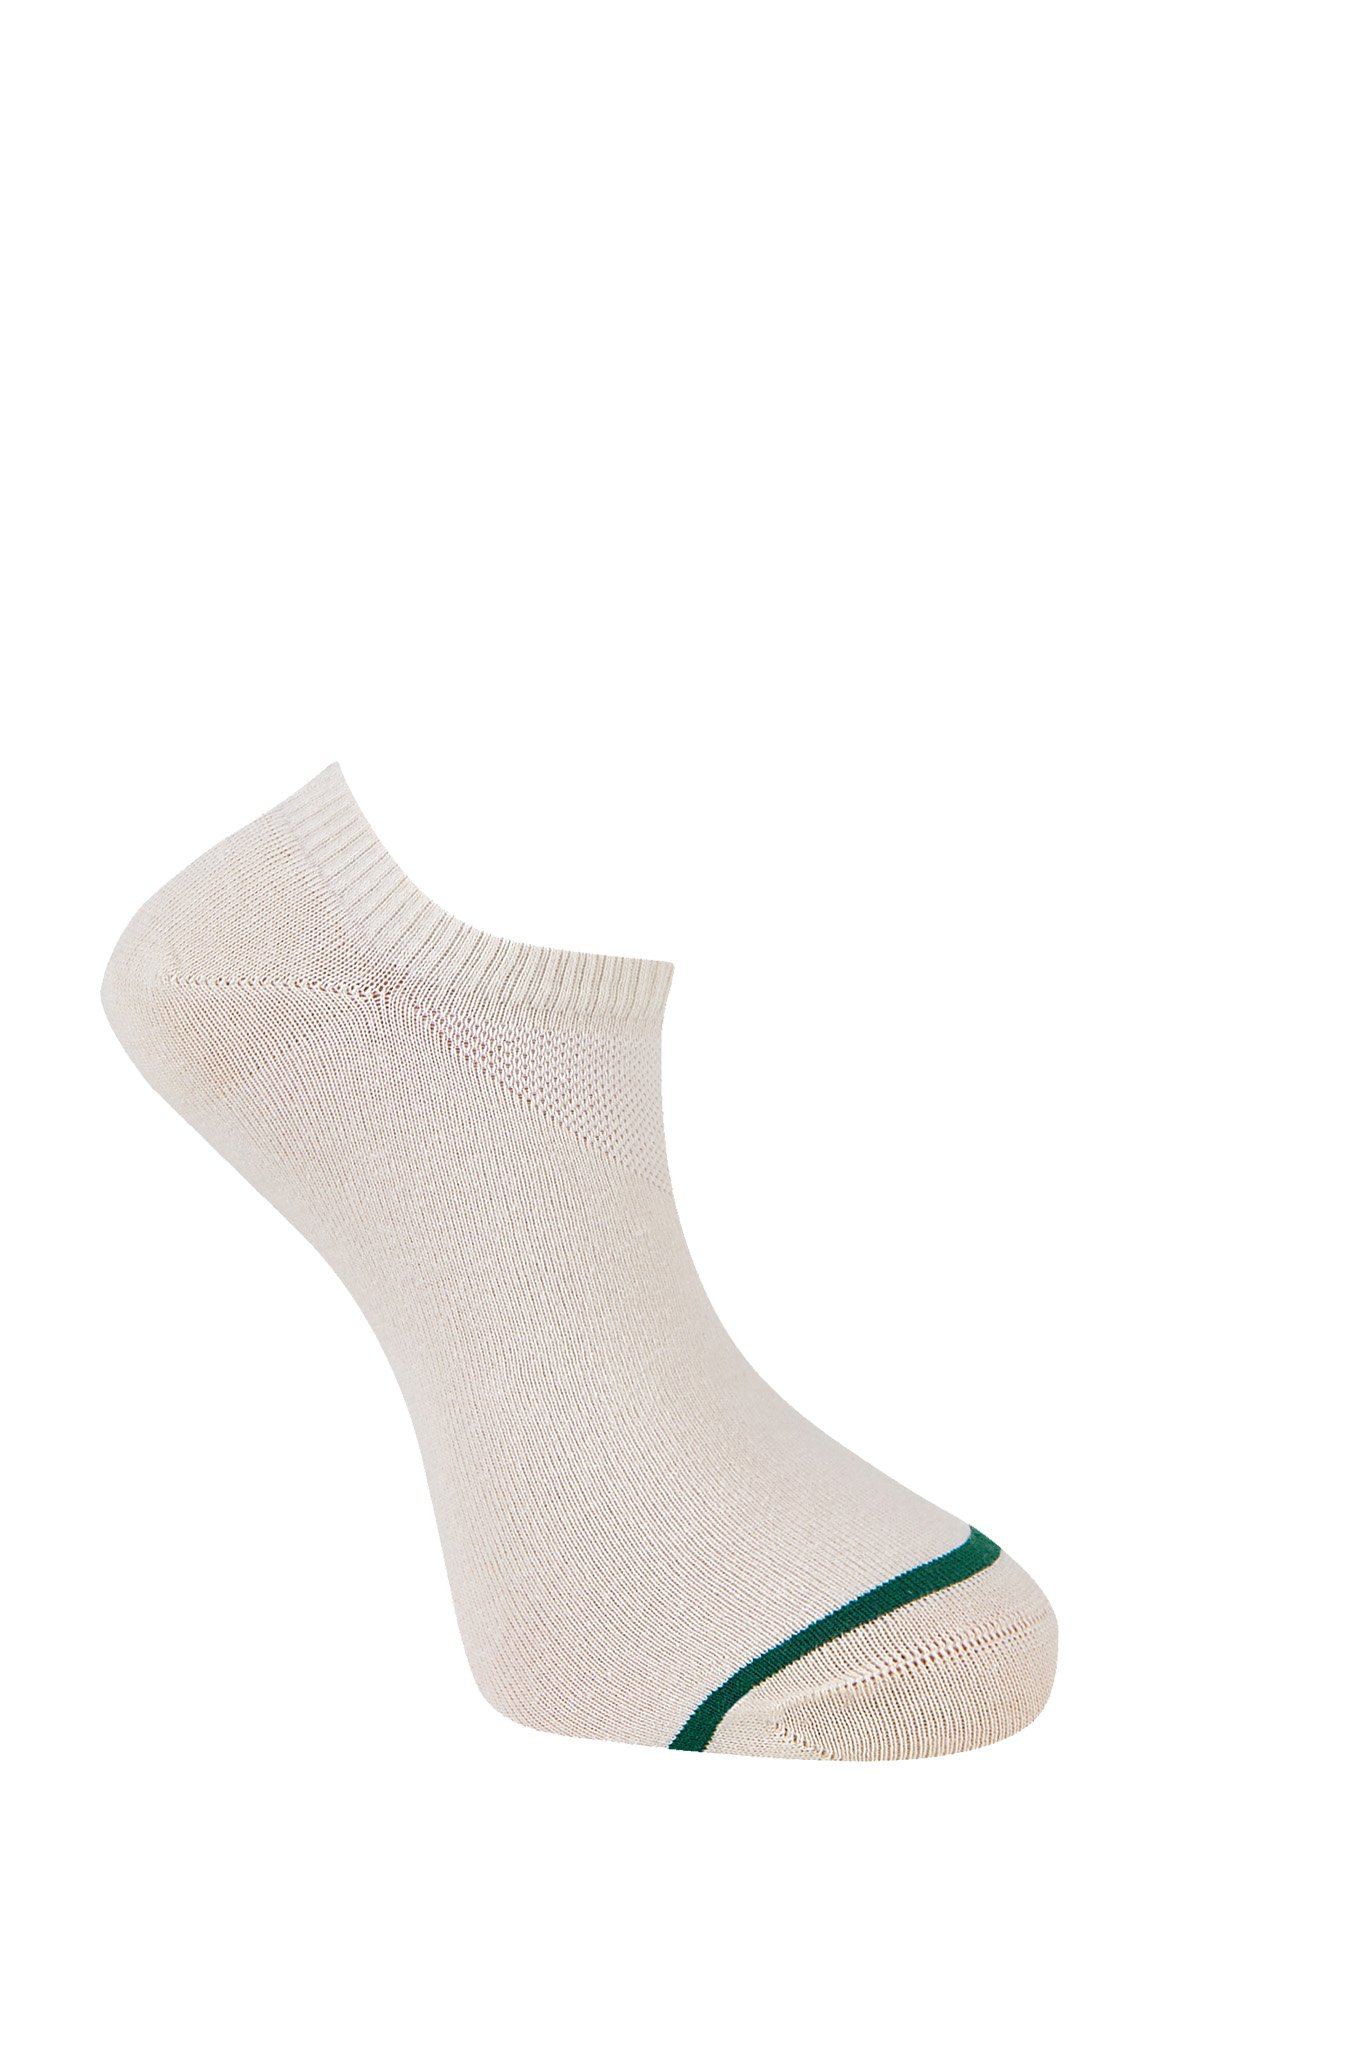 nylon trainer socks